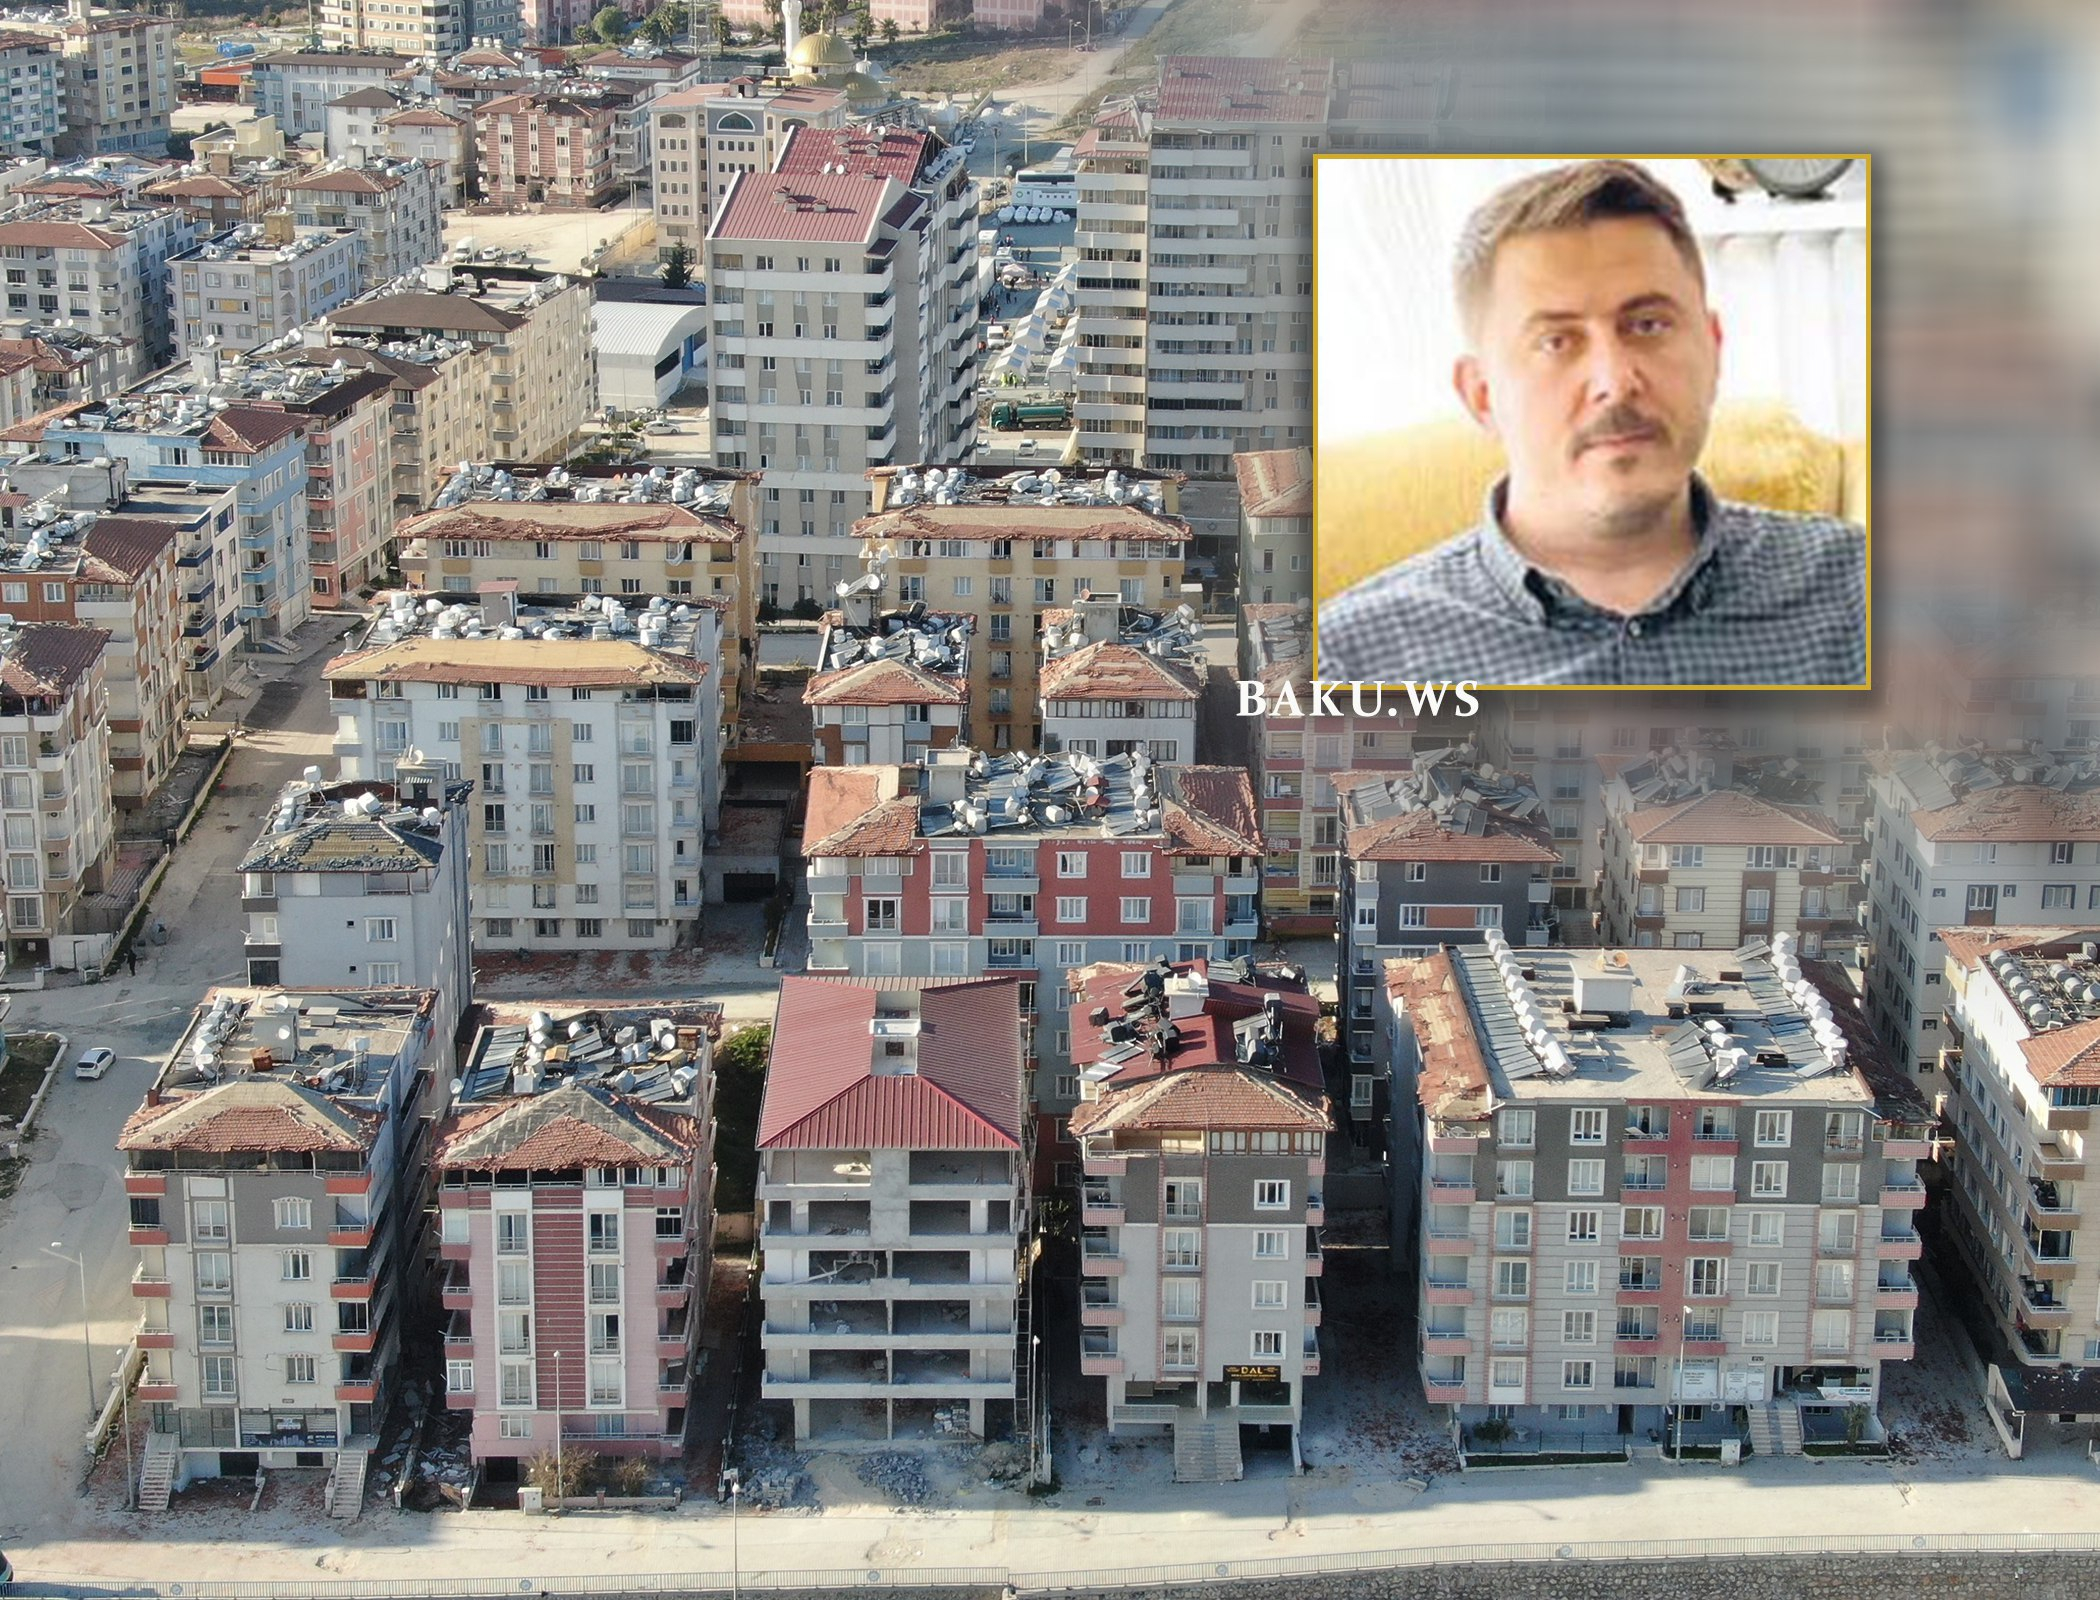 Zəlzələ zamanı 15 binası DAĞILMADI: "O demək deyil ki, biz məsuliyyət daşımırıq" - FOTO